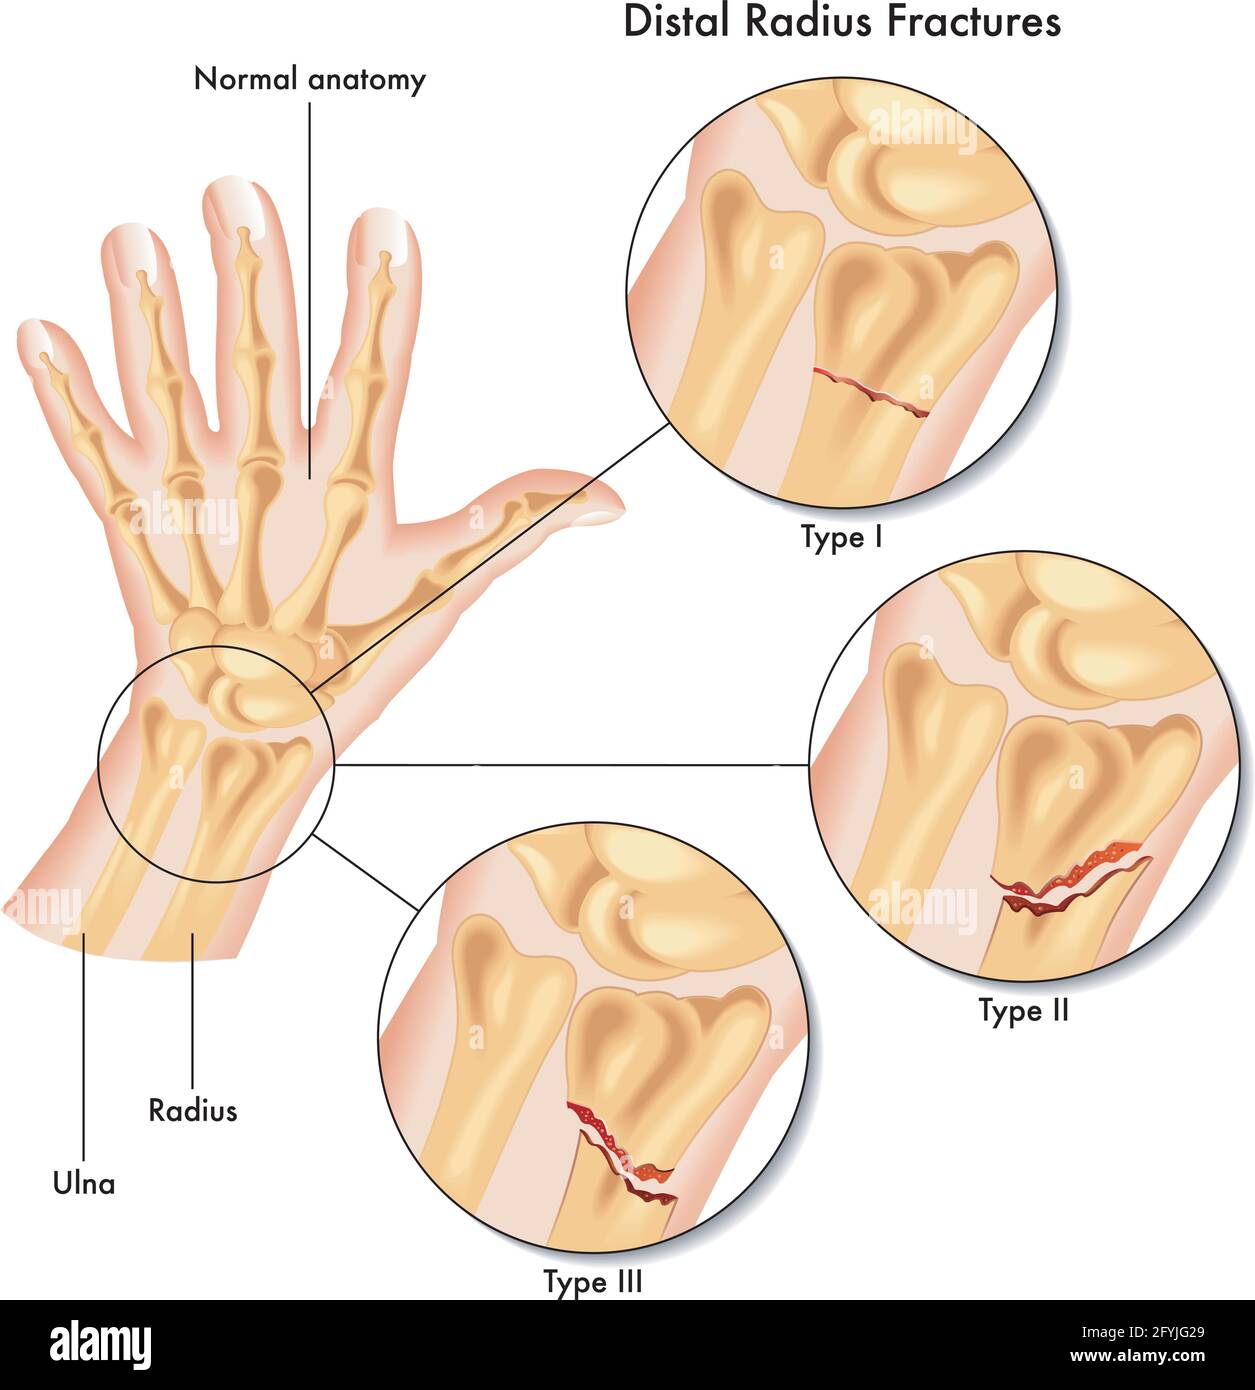 Illustrazione medica dei vari tipi di frattura del raggio distale. Illustrazione Vettoriale